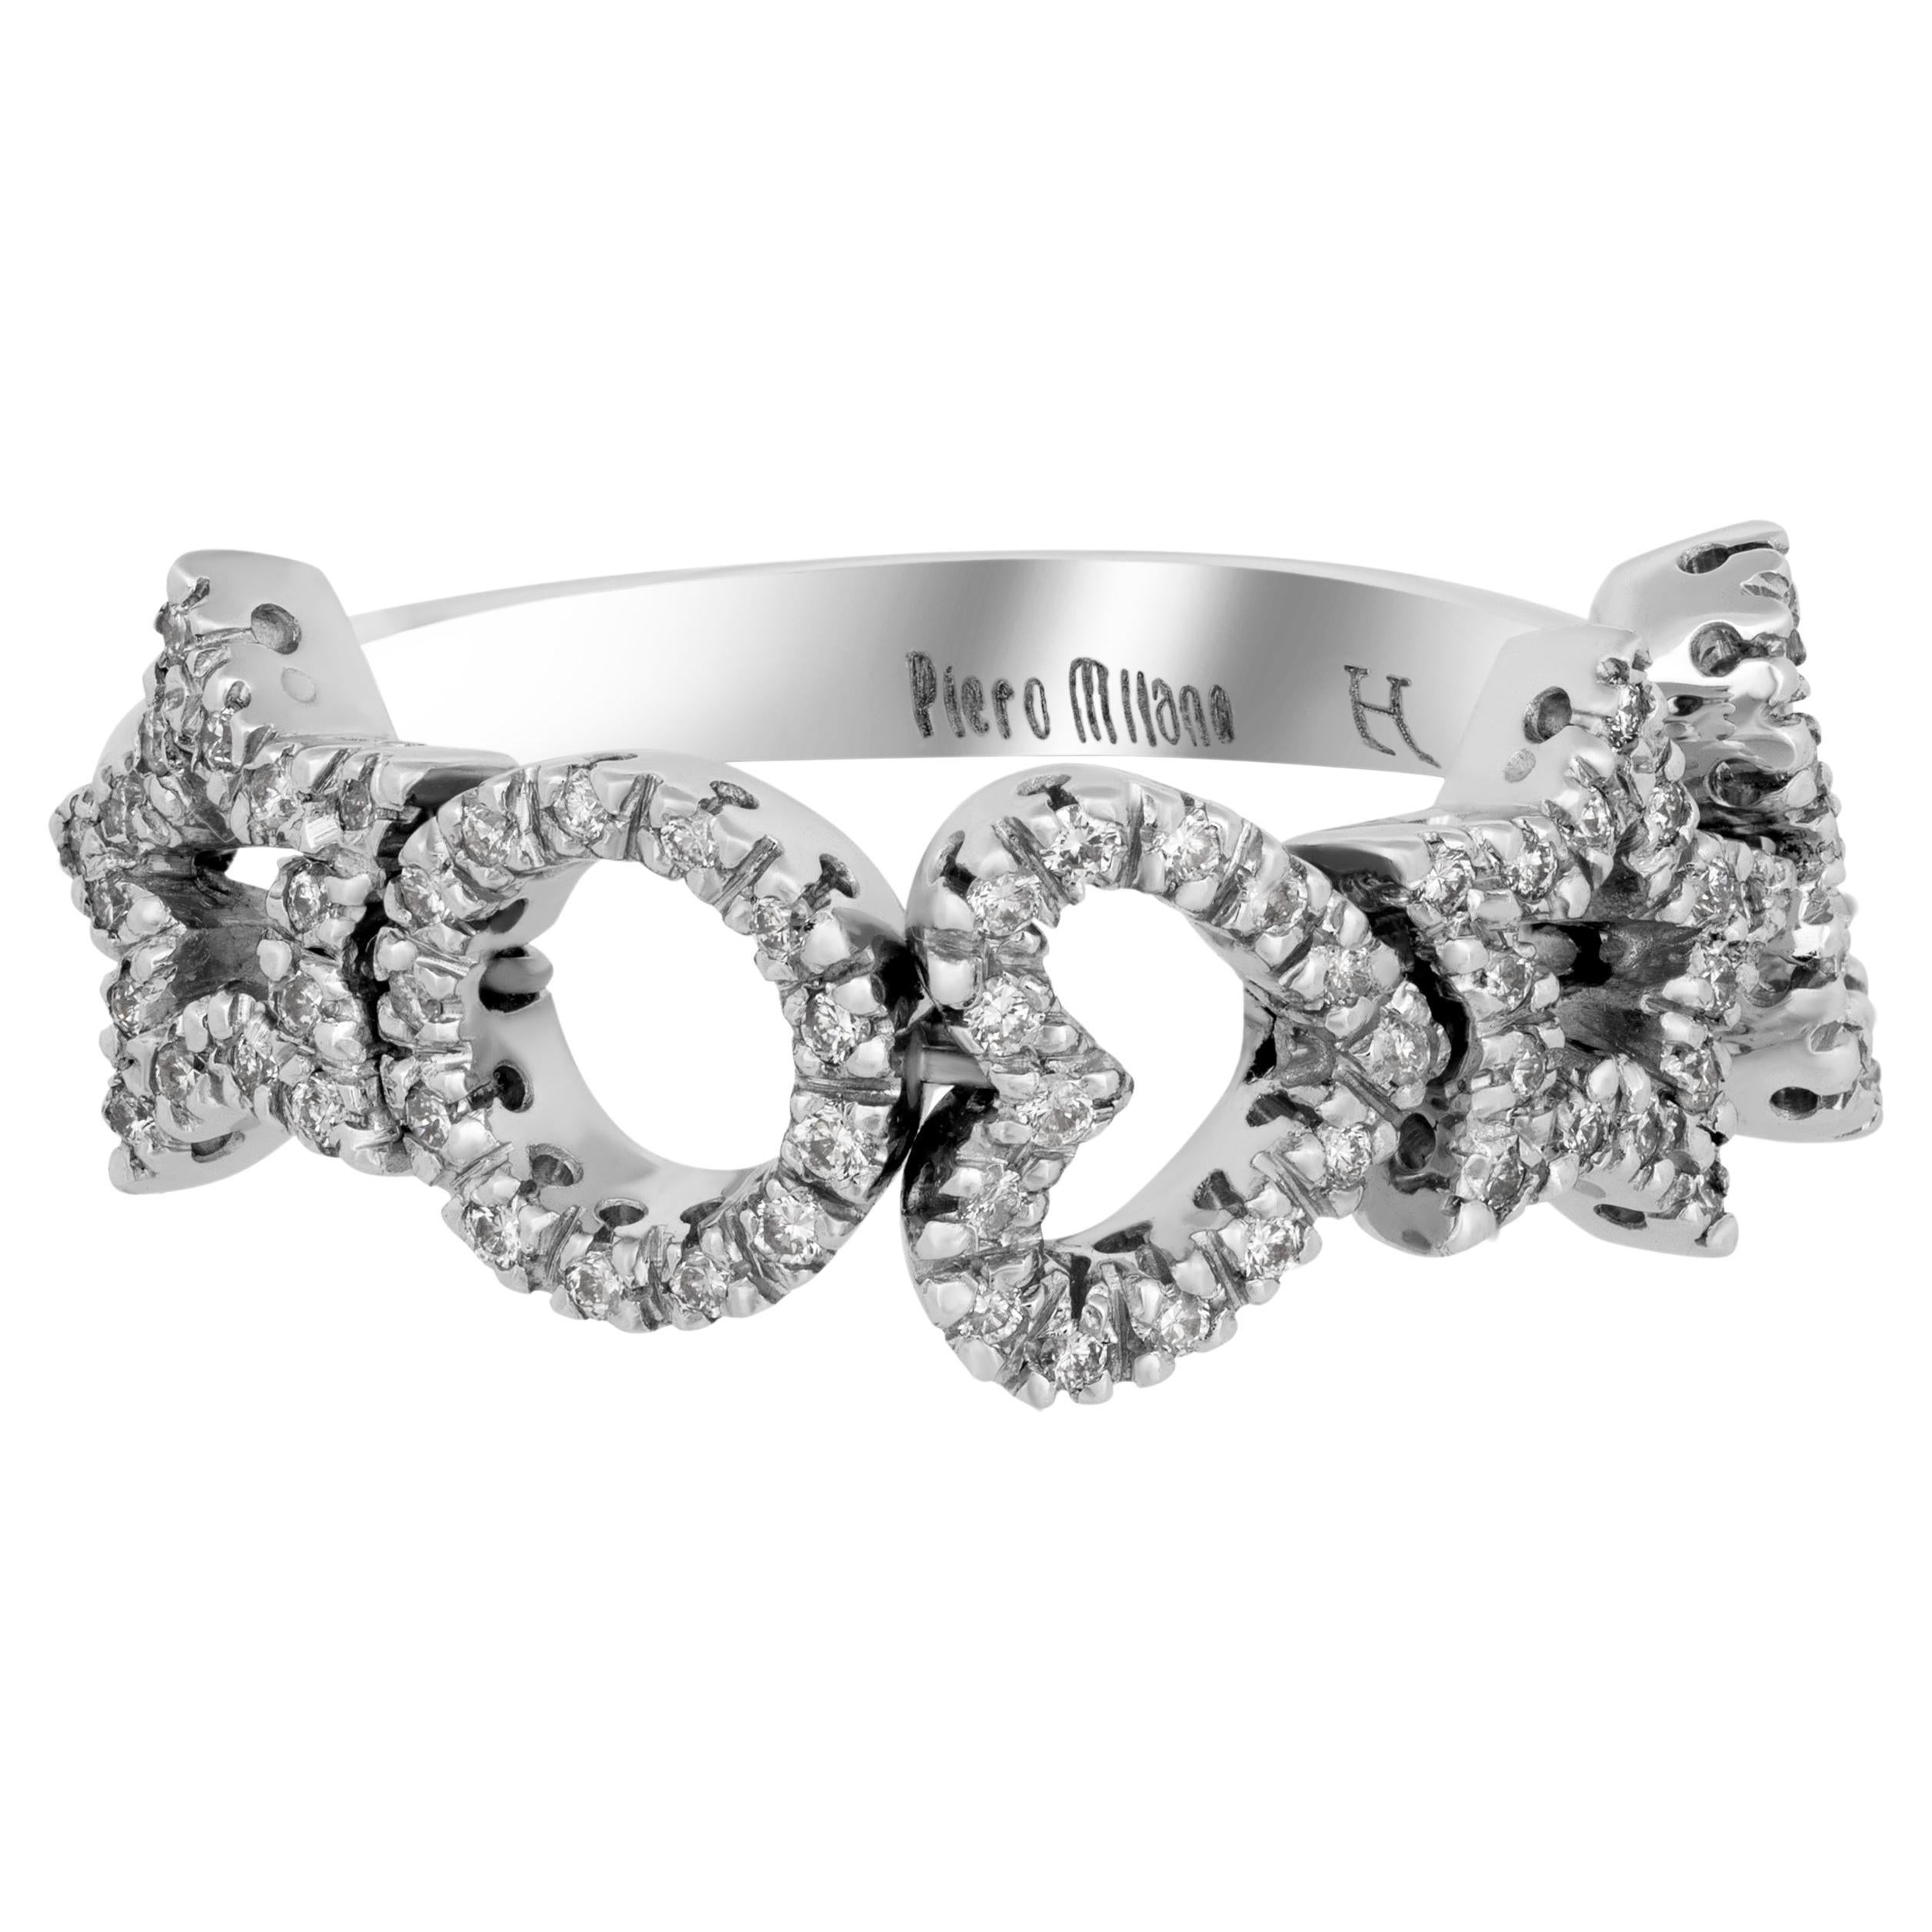 Piero Milano 18K White Gold Diamond Ring Sz 7.5 For Sale